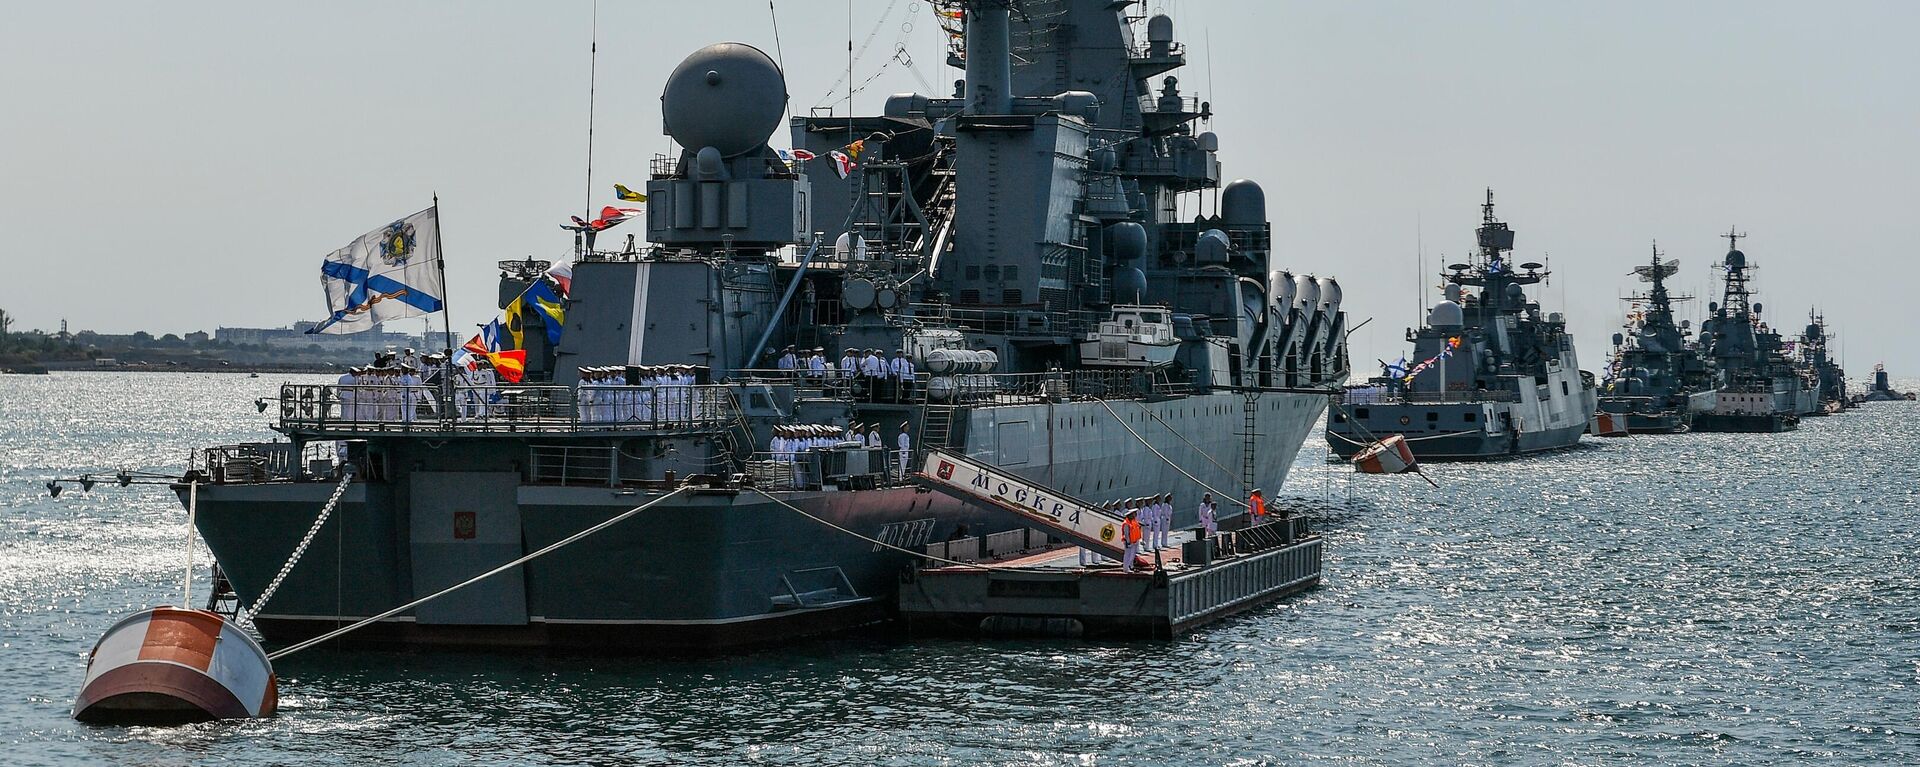 O cruzador Moskva nos preparativos para o desfile do Dia da Marinha Russa, em Sevastopol, 23 de julho de 2021. - Sputnik Brasil, 1920, 22.04.2022